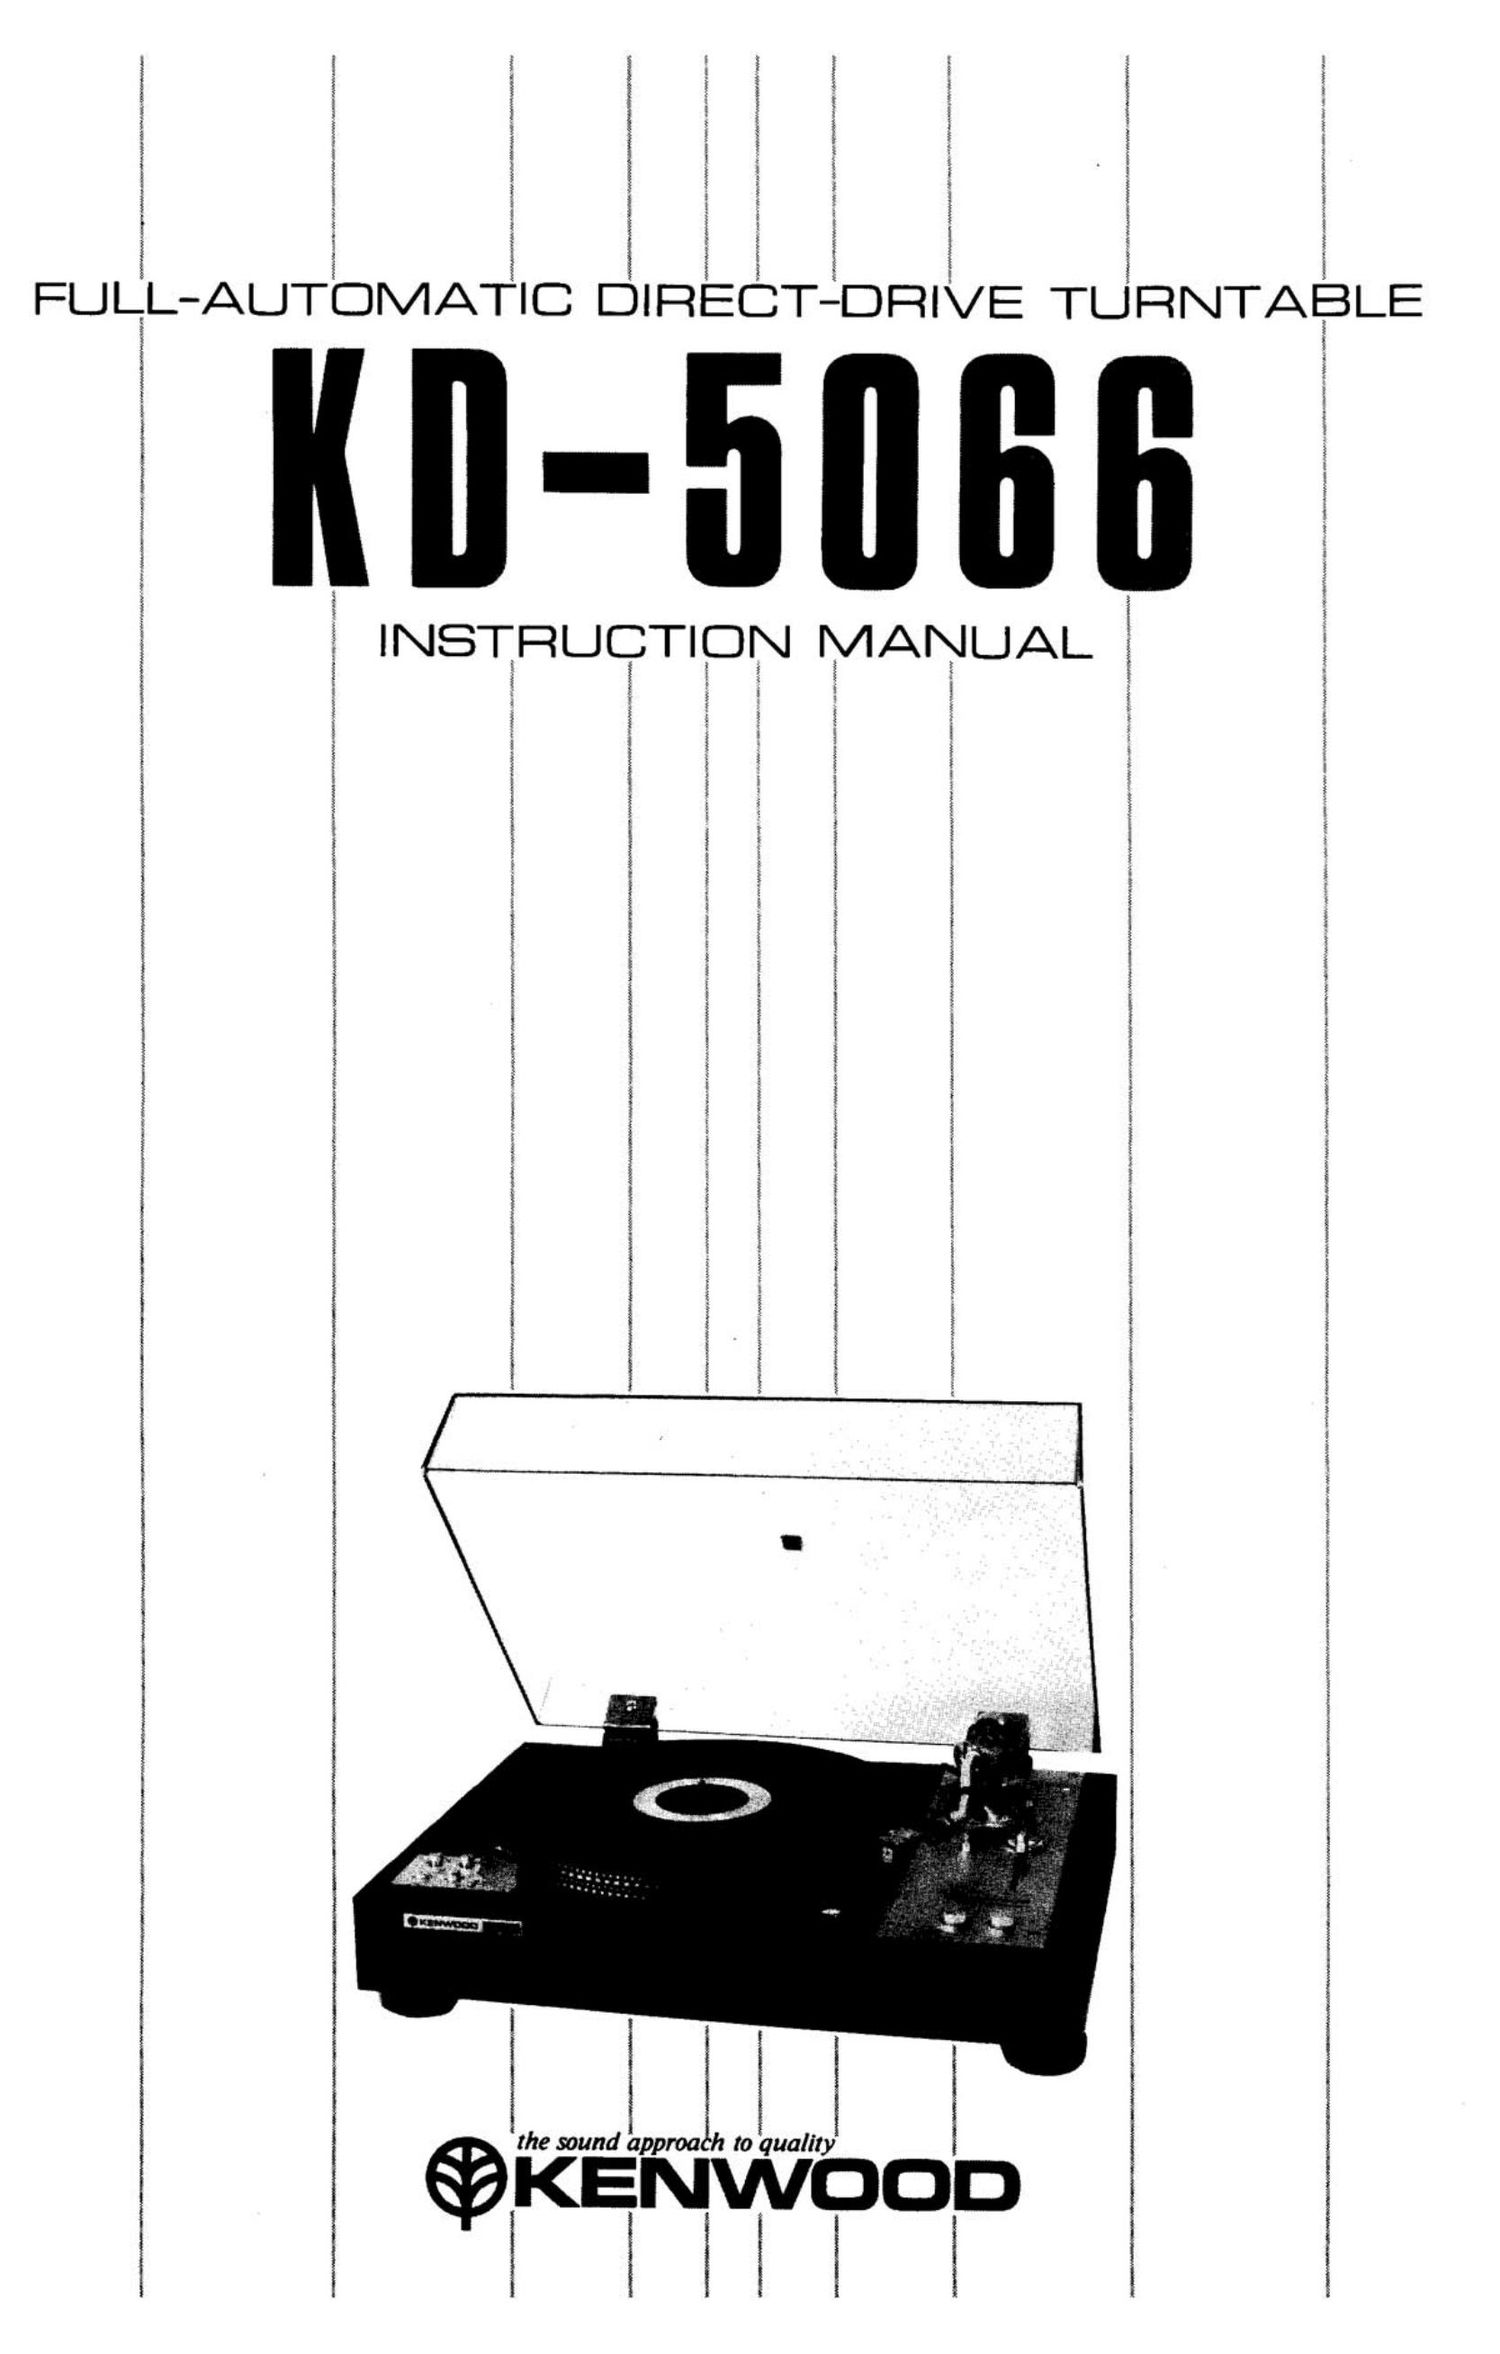 Kenwood KD 5066 Owners Manual